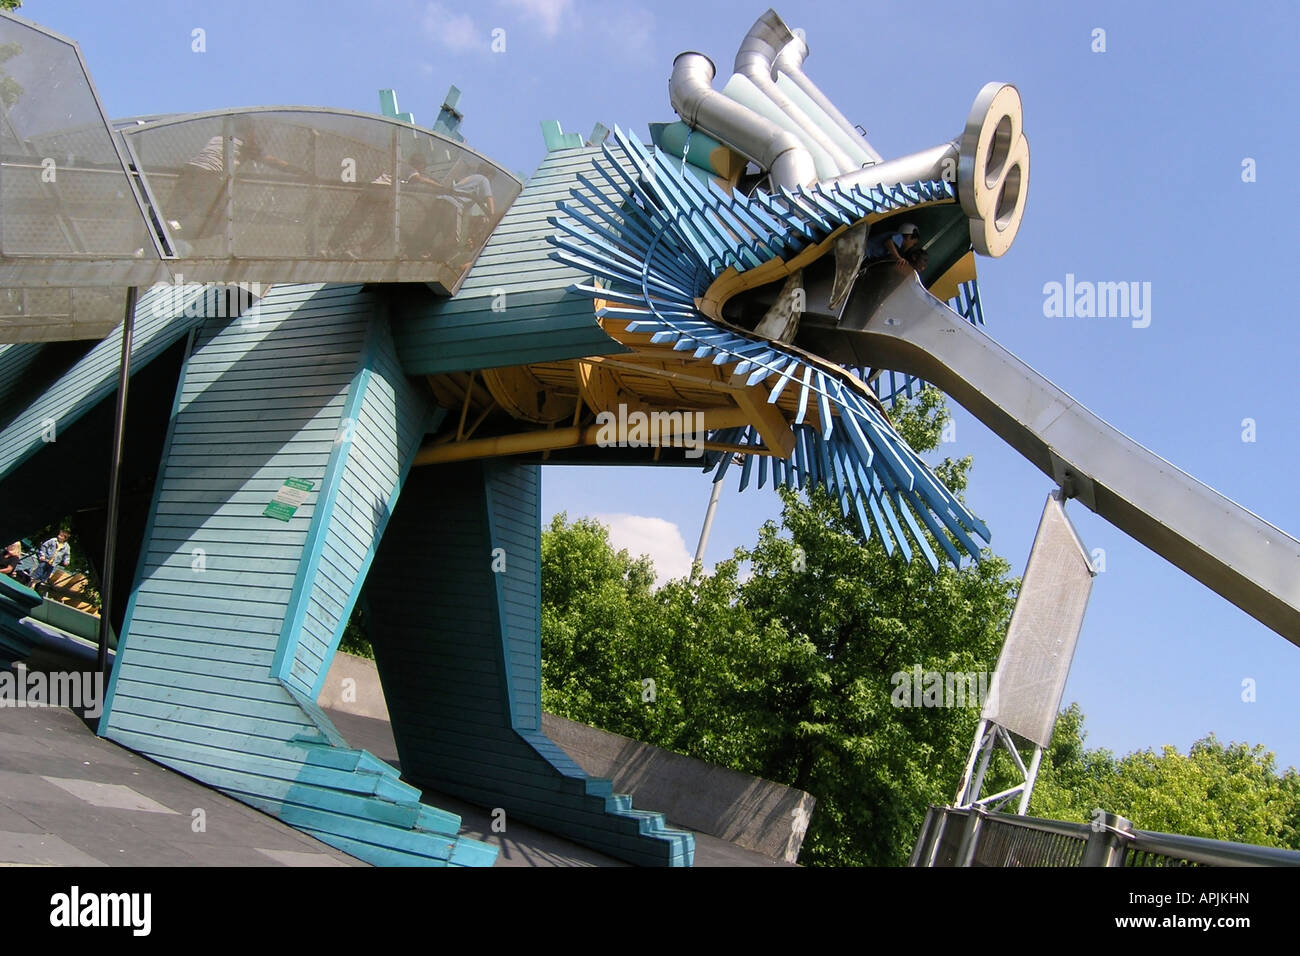 detail of dragon at playground Cite des Sciences La Vilette Paris France Stock Photo